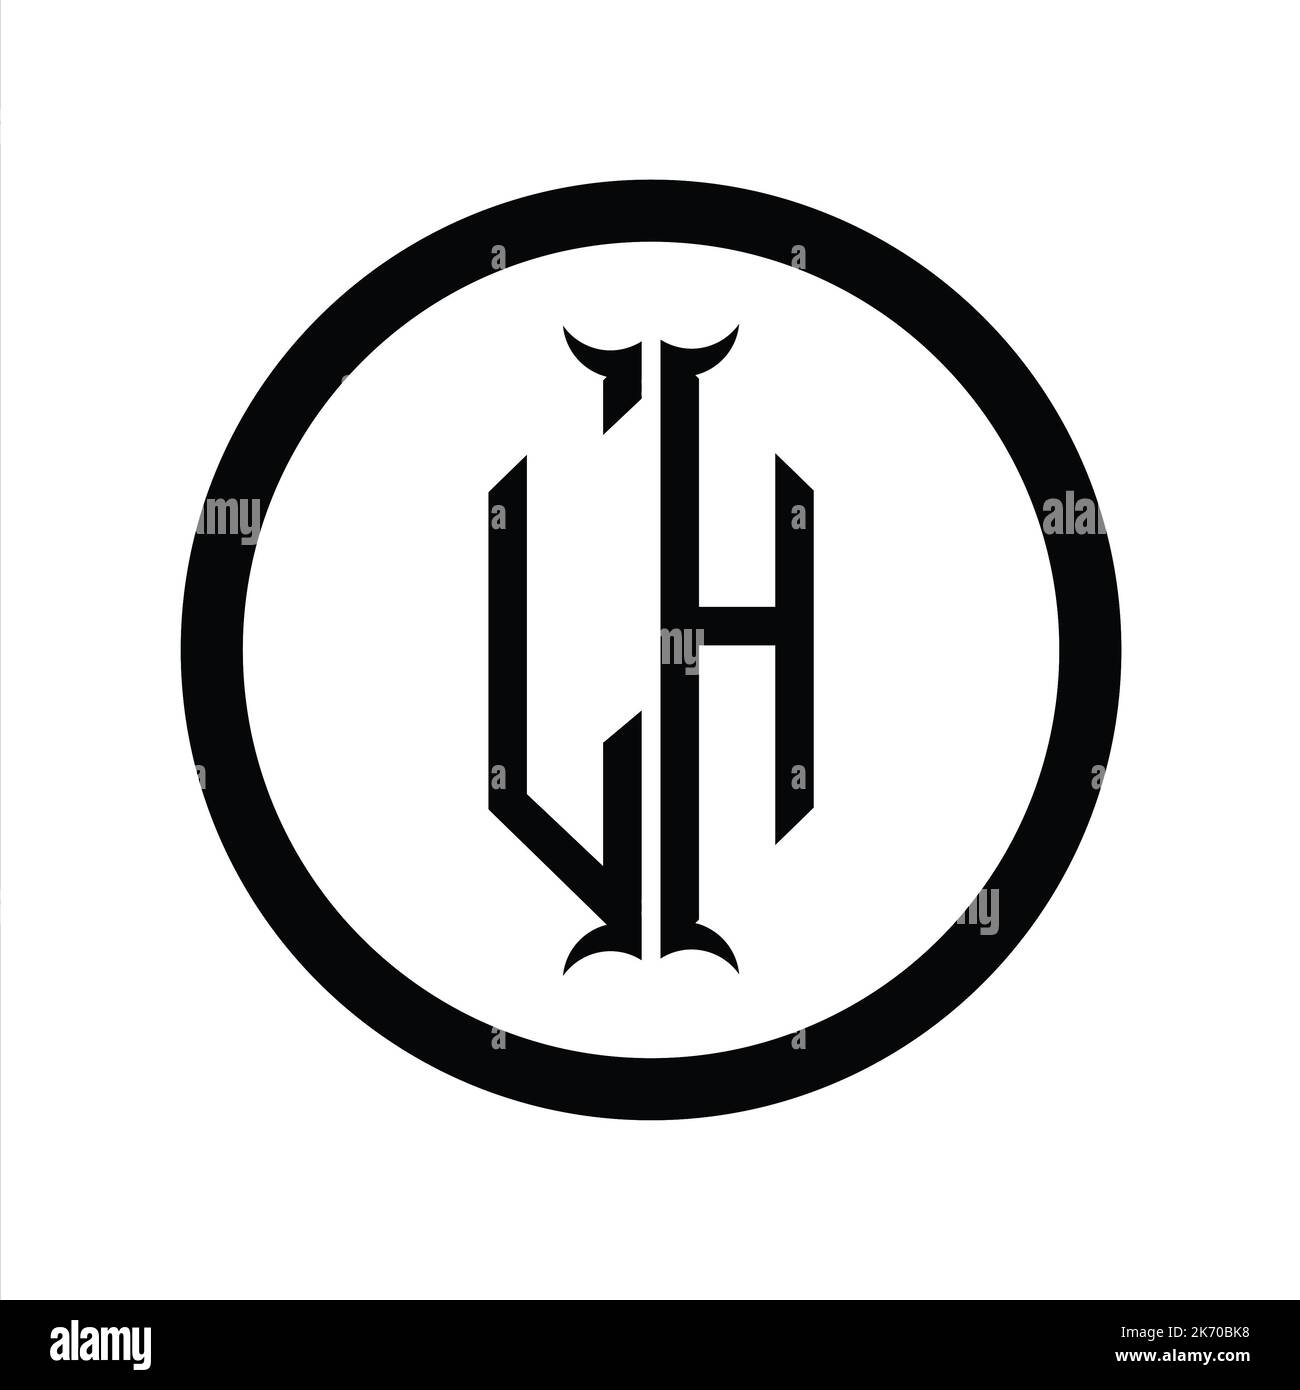 HL Logo monogram letter with hexagon horn shape design template Stock Photo